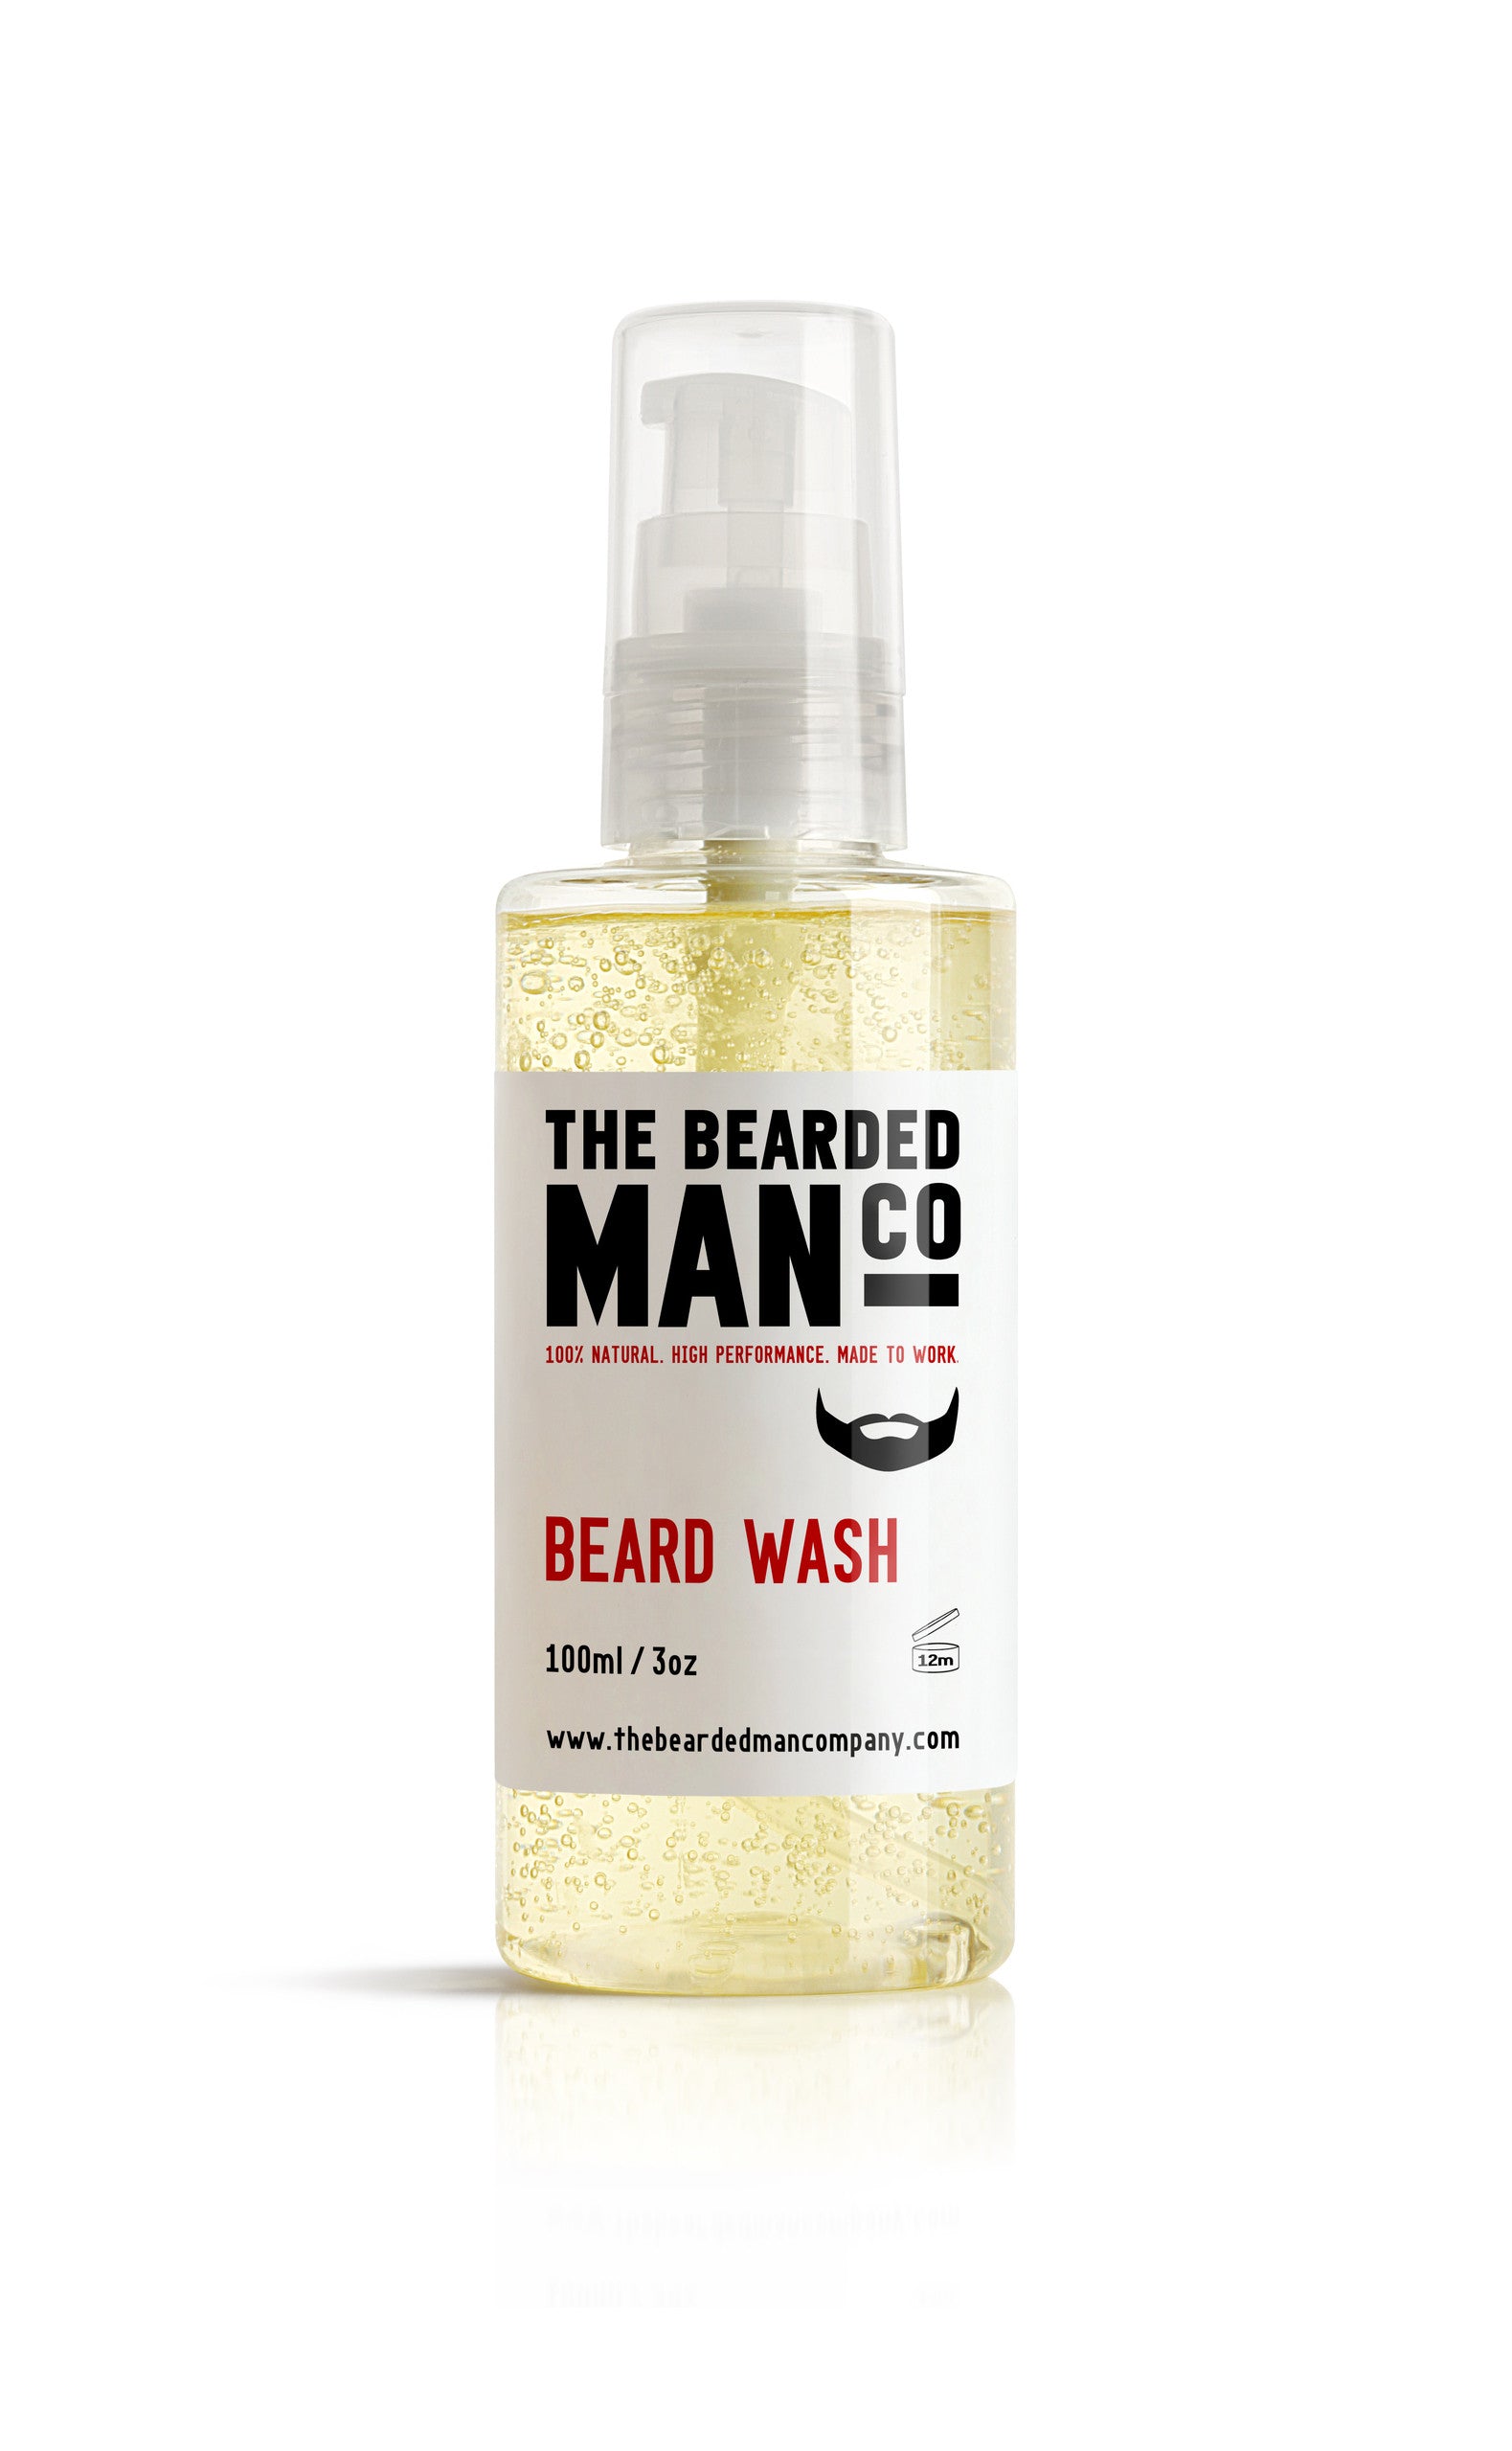 szampon z odżywką bearded man beard wash